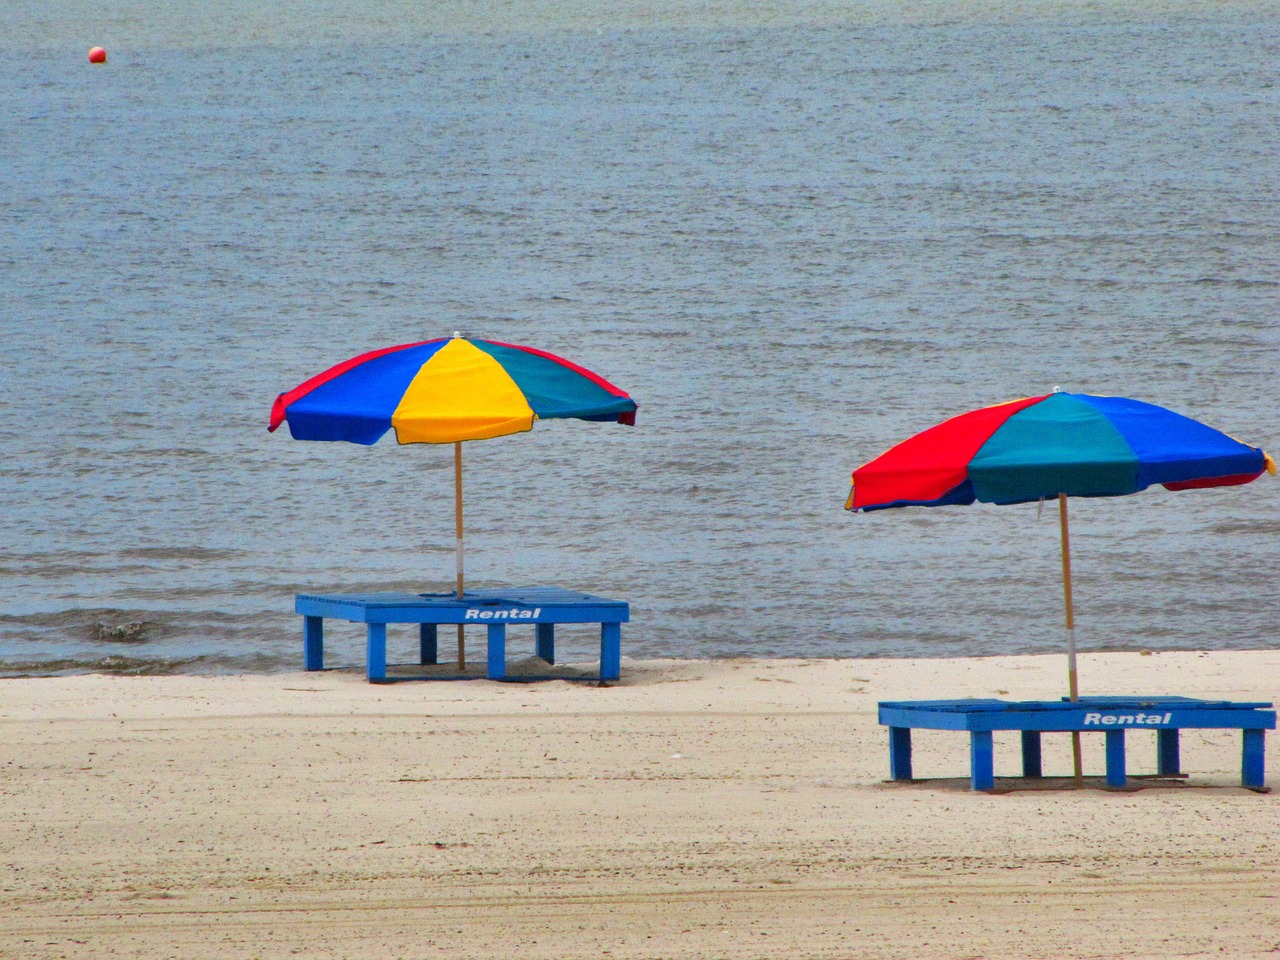 Beach umbrellas over tables on the beach